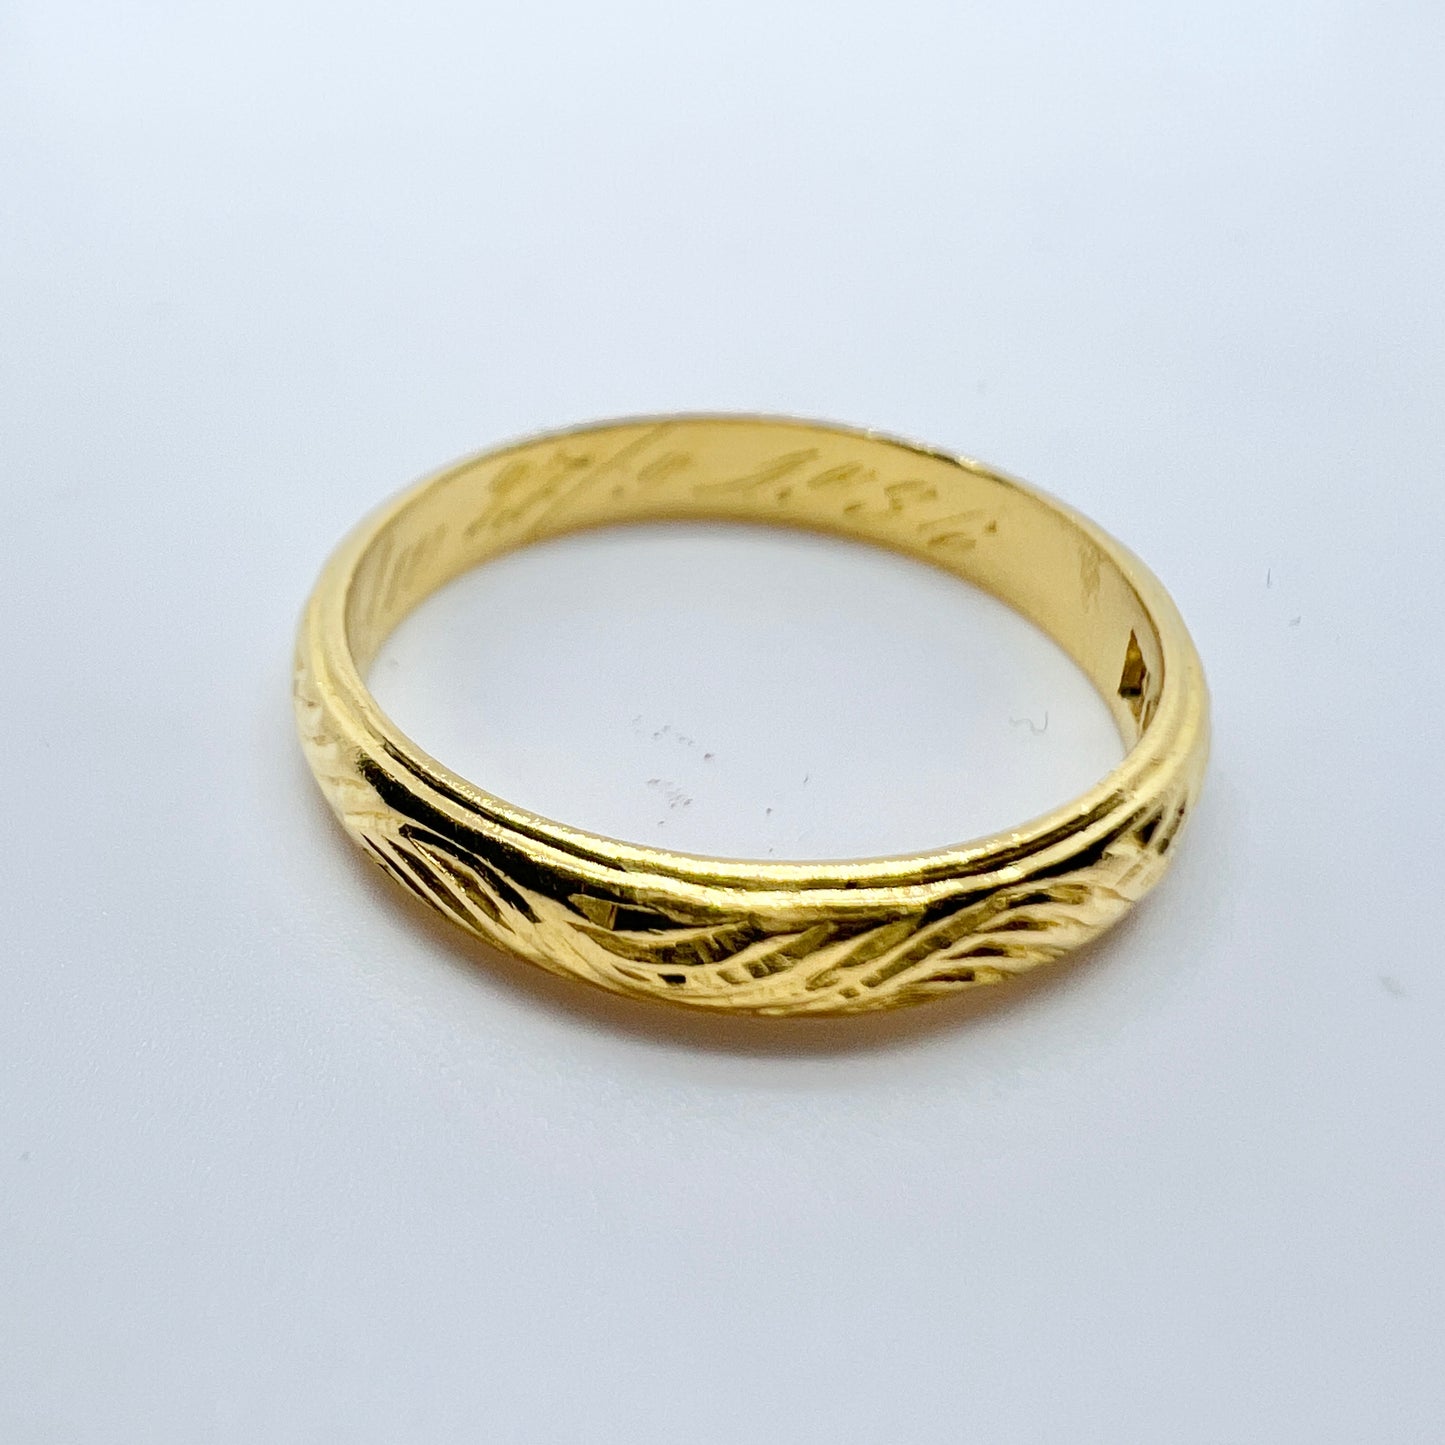 John Björk, Sweden 1936. Vintage 23k Gold Wedding Band Ring.